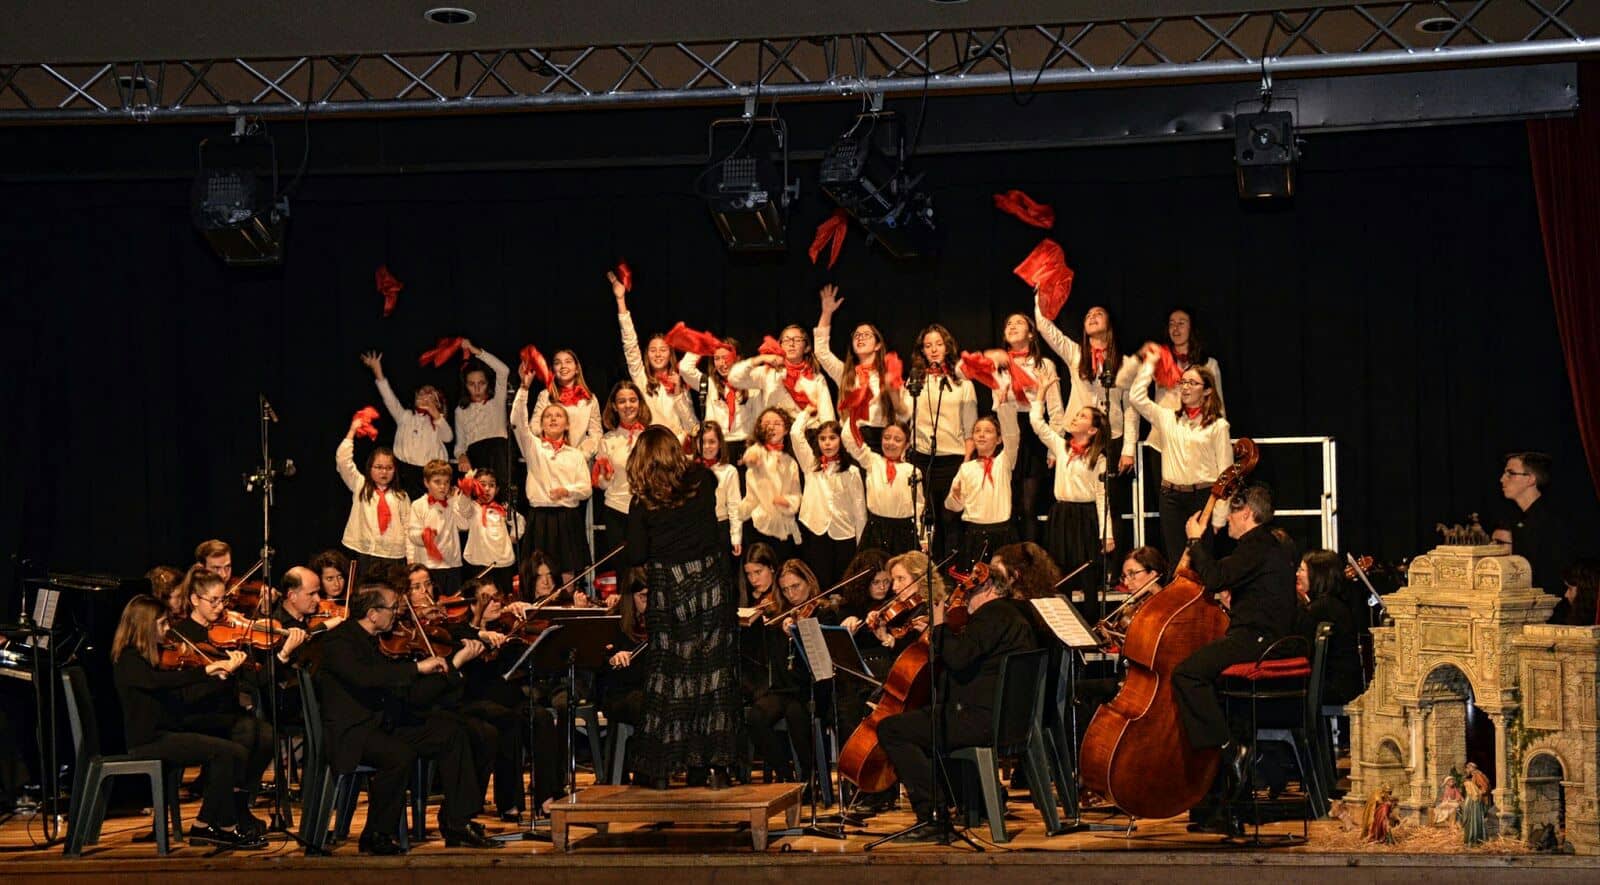 La orquesta de la Sociedad Musical y el Coro de Paulas ofrecen un concierto a beneficio de Cáritas